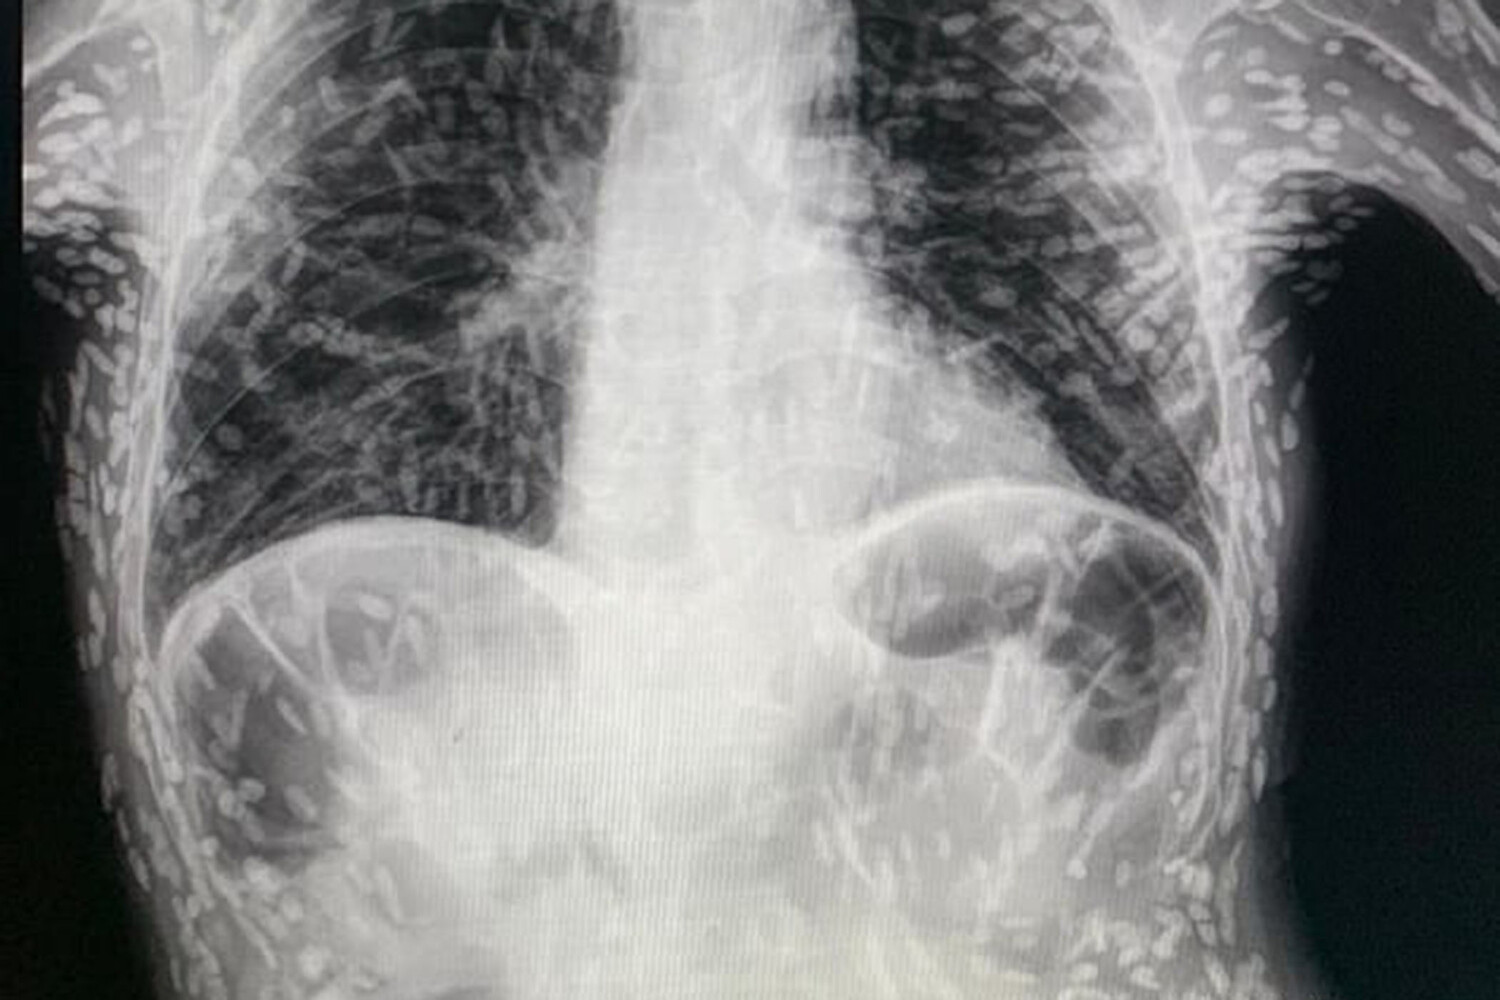 силиконовая грудь на рентгене фото 53